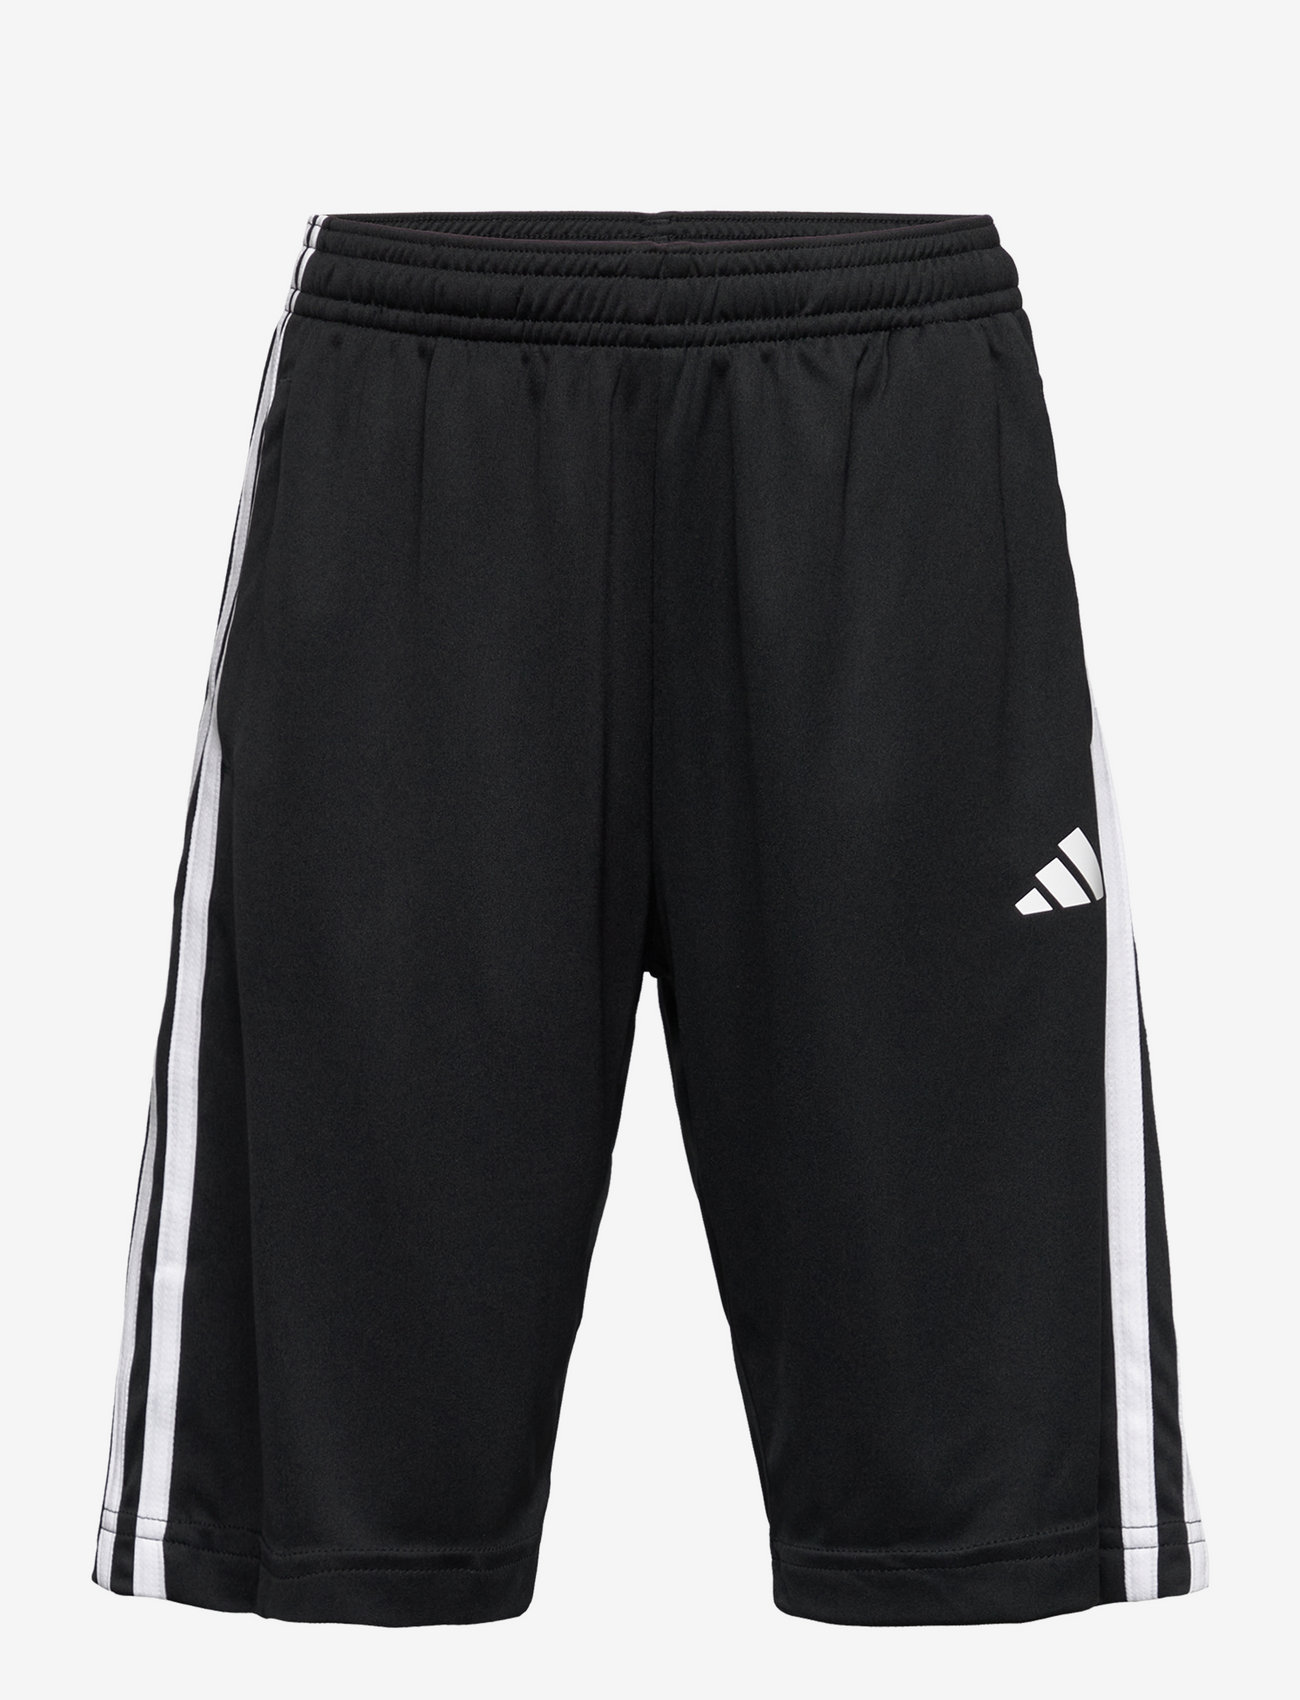 adidas Sportswear - U TR-ES 3S SH - sweat shorts - black/white - 0